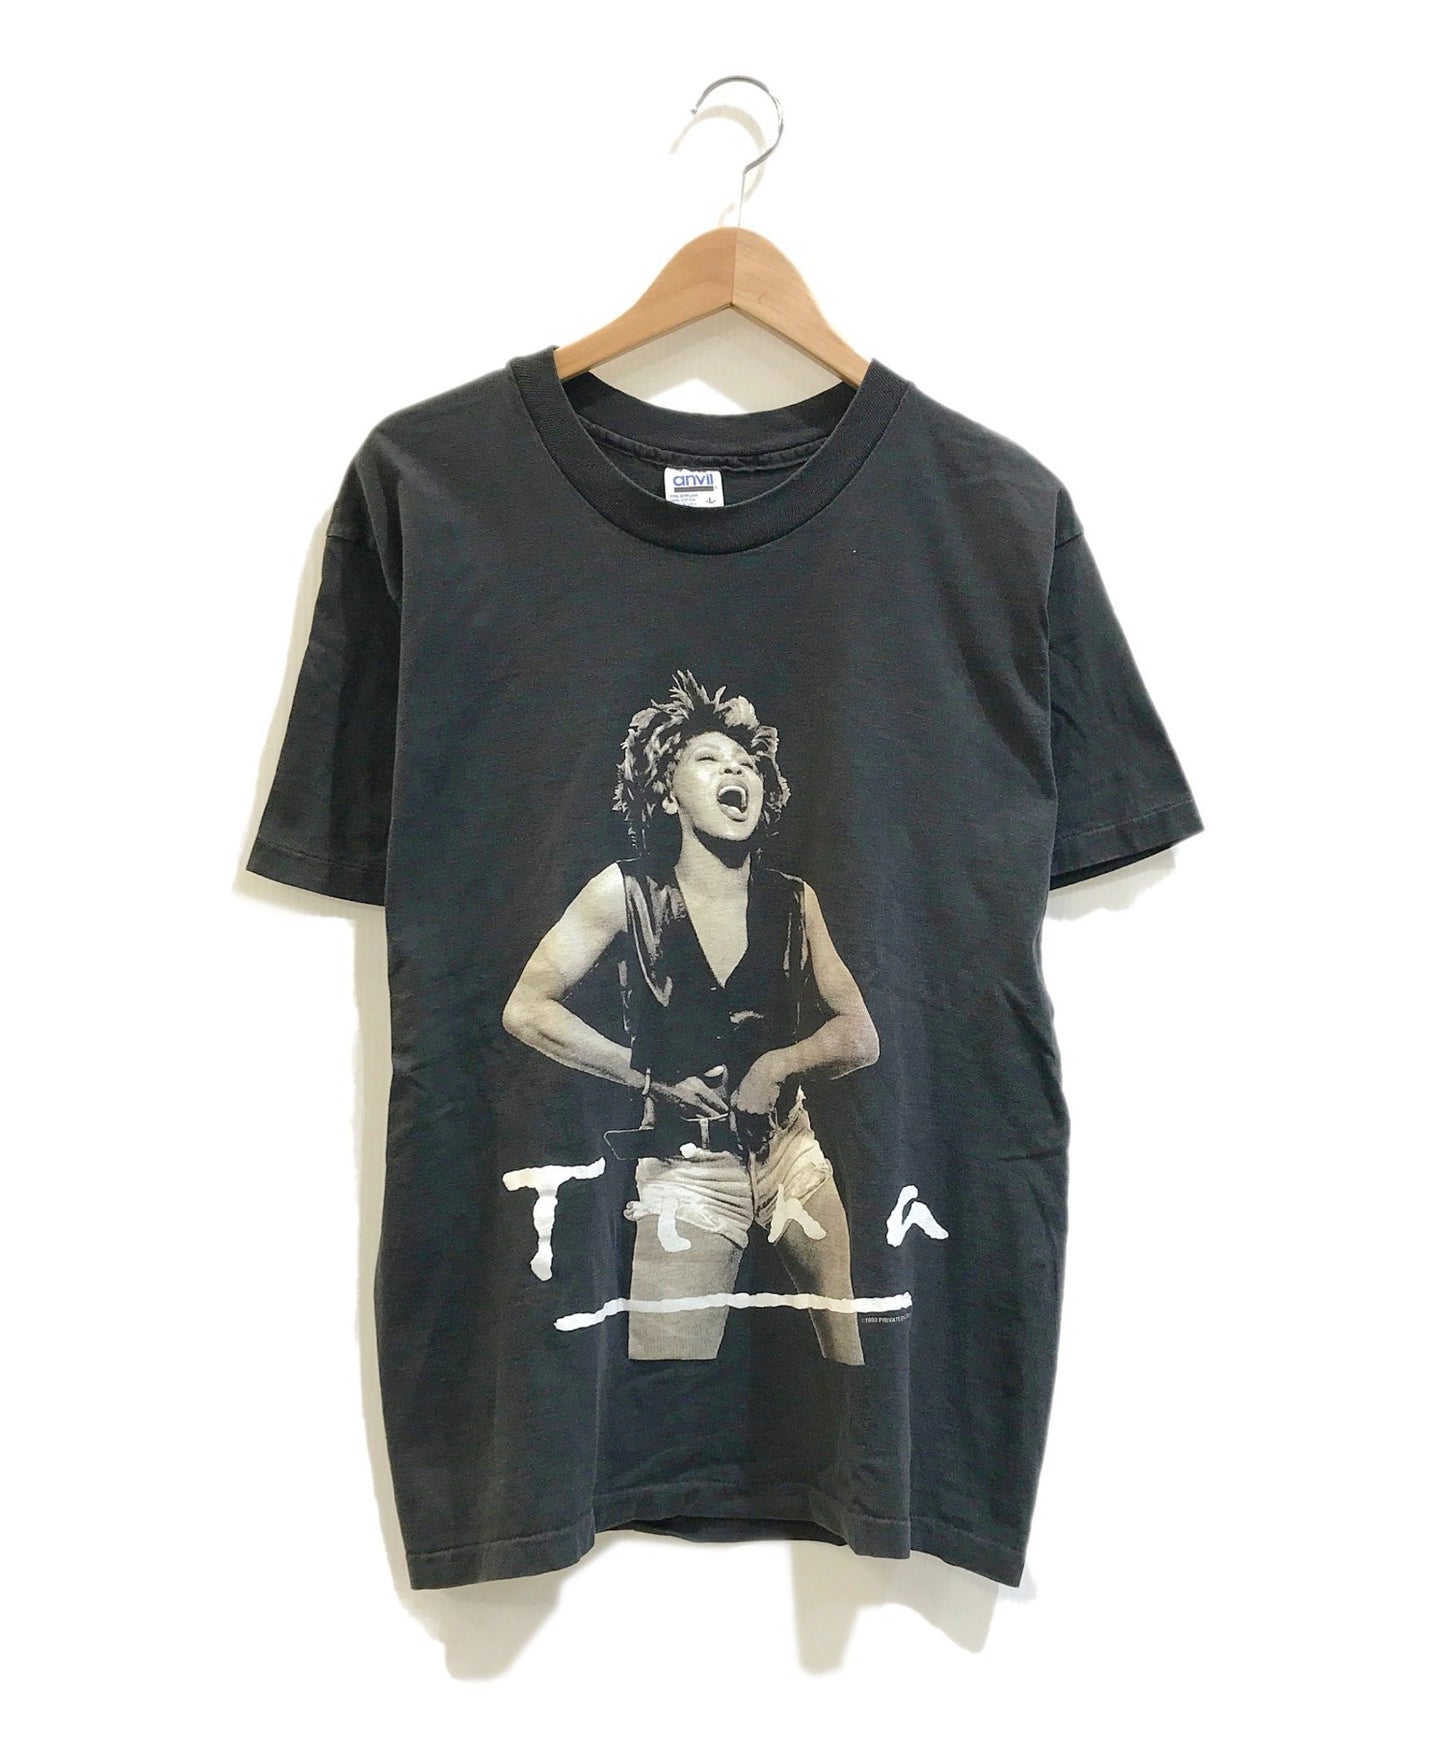 [빈티지 옷] 90 년대 Tina Turner 아티스트 티셔츠